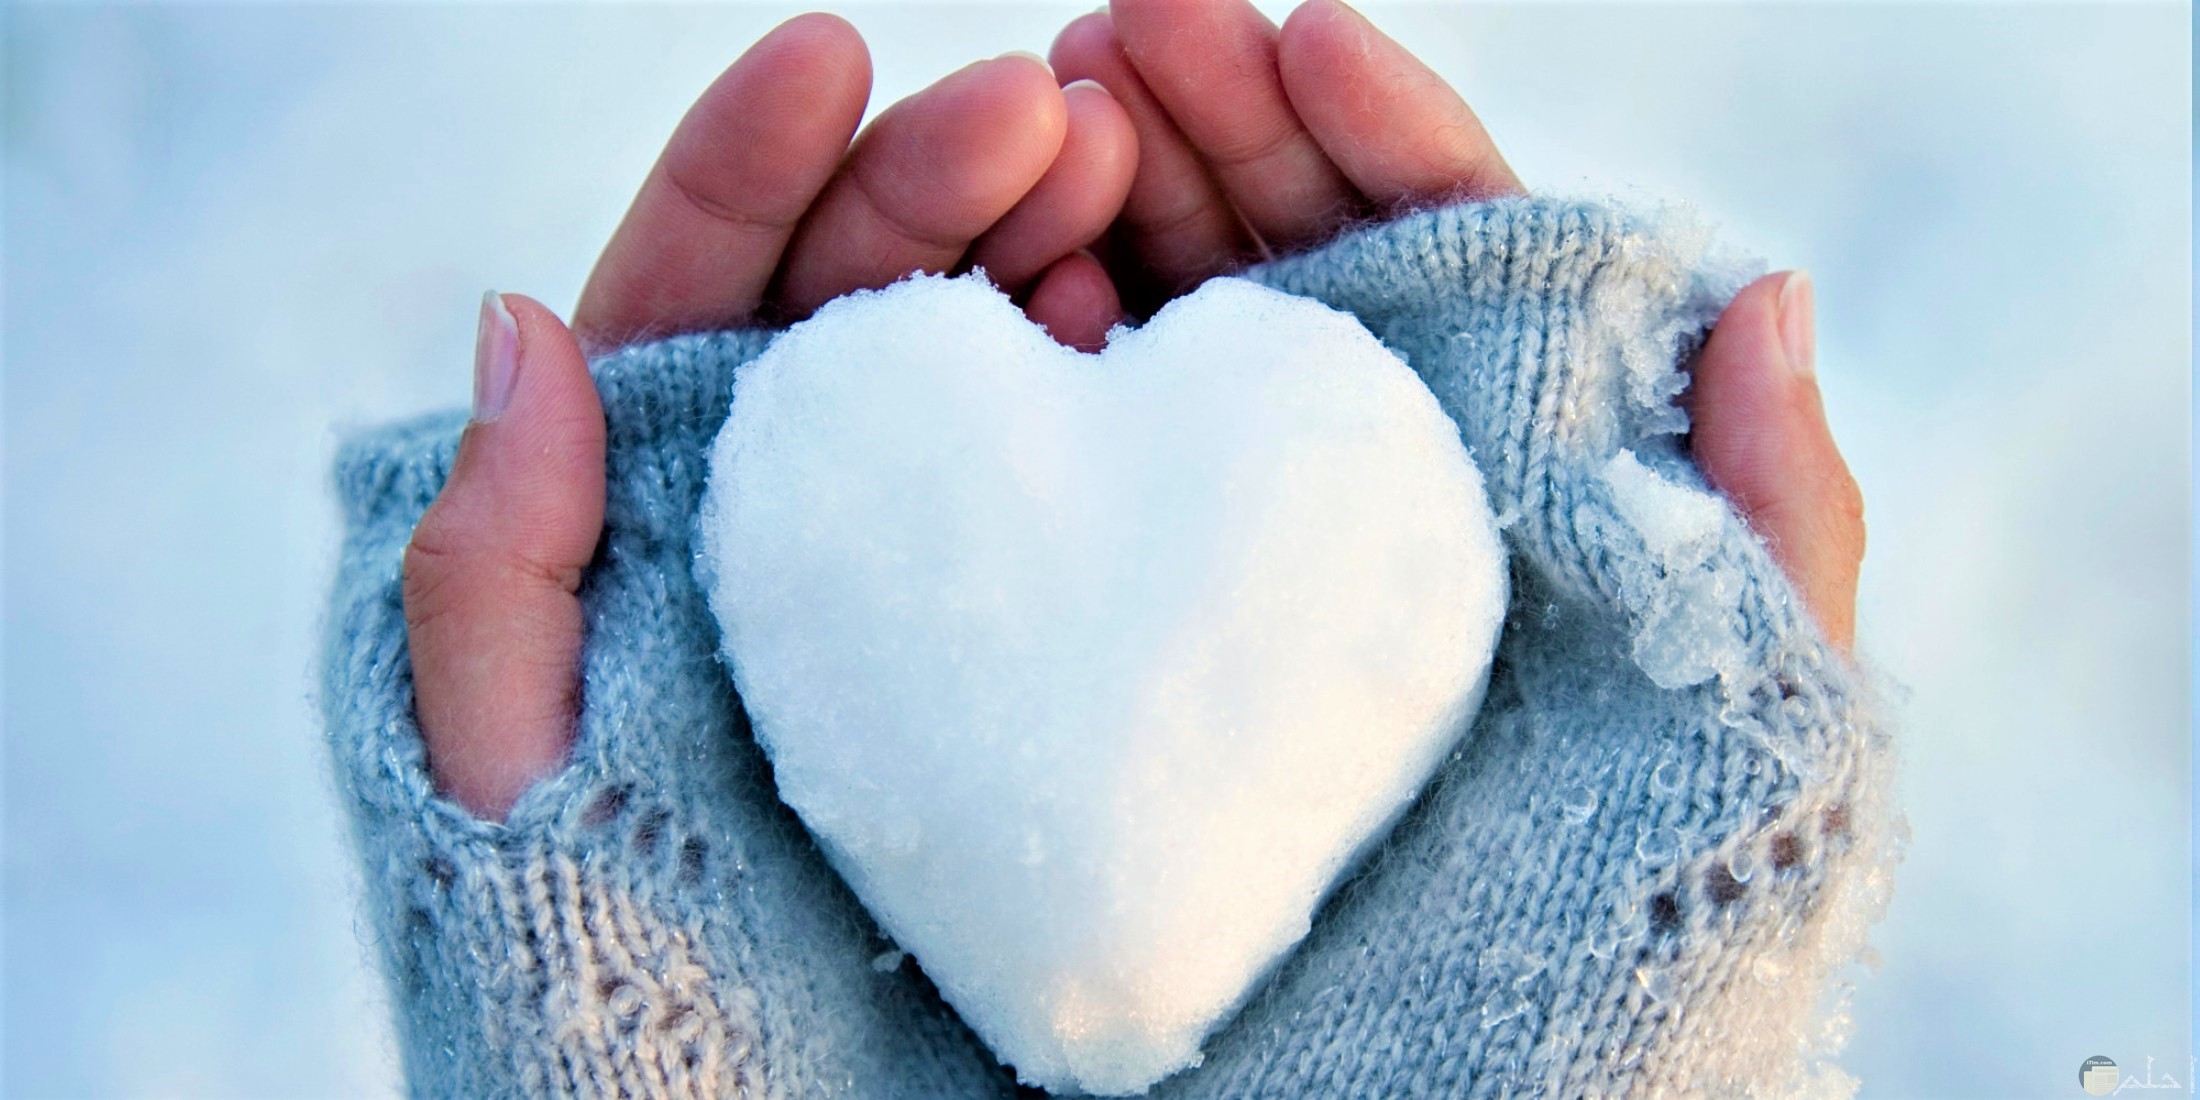 قلب من الثلج يعبر عن دفء المشاعر